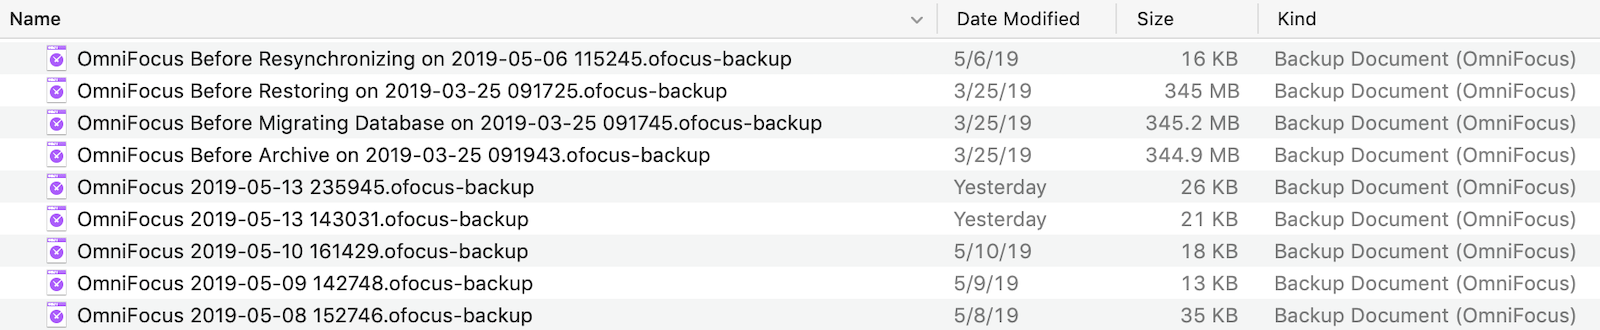 OmniFocus Backups Folder in Finder